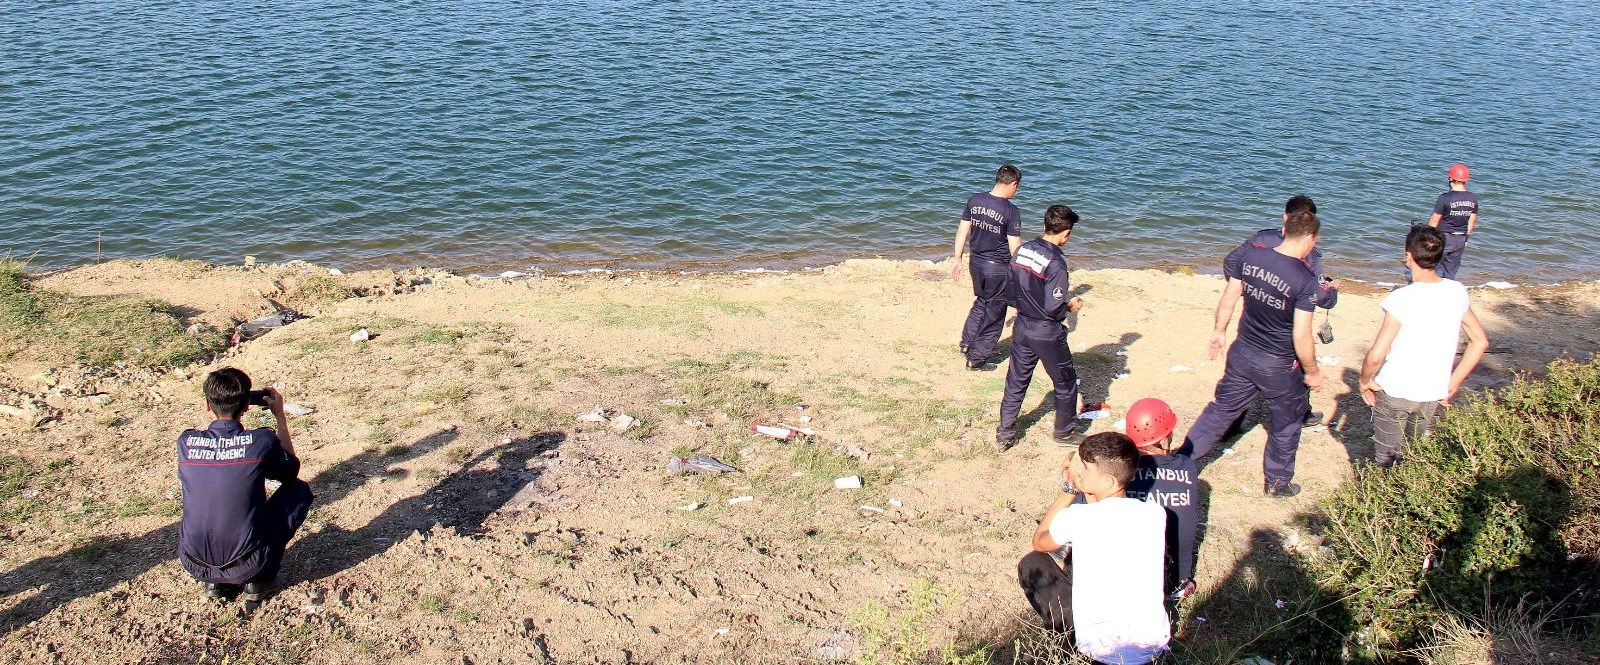 Alibeyköy Baraj Gölü’ndeki tekne keyfi ölümle bitti